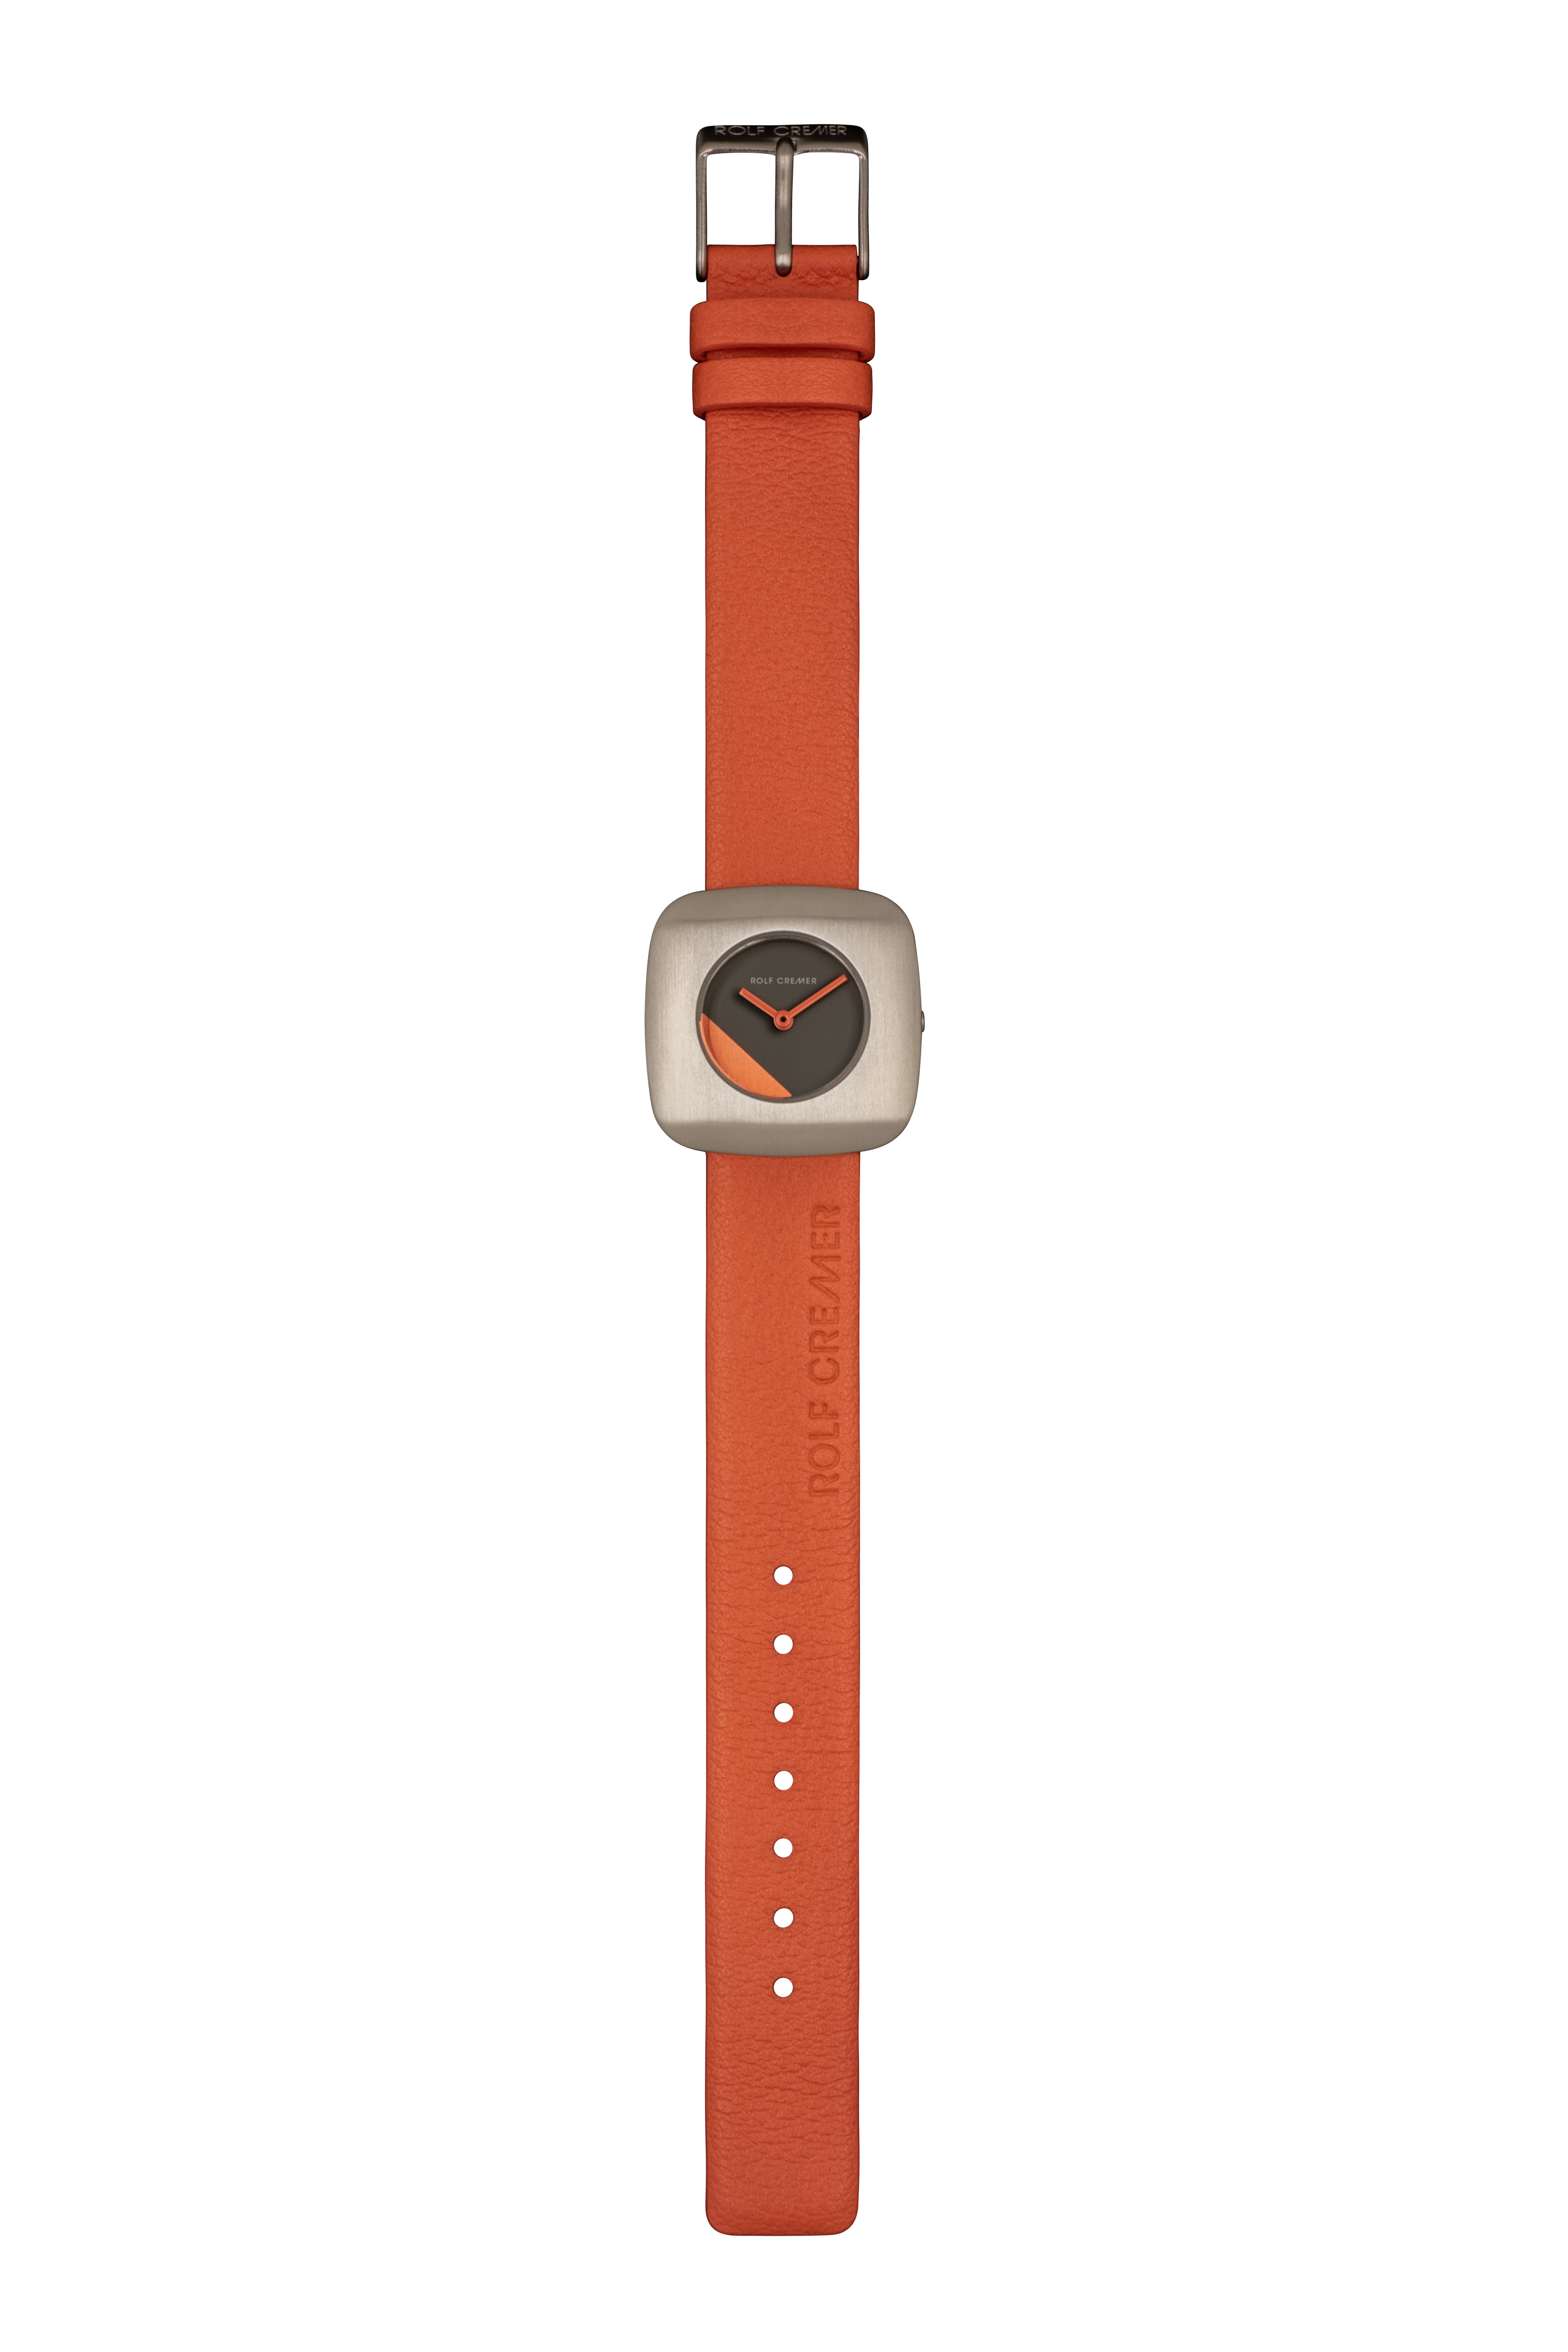 ROLF CREMER Armbanduhr EDGE Lederband Orange 508005